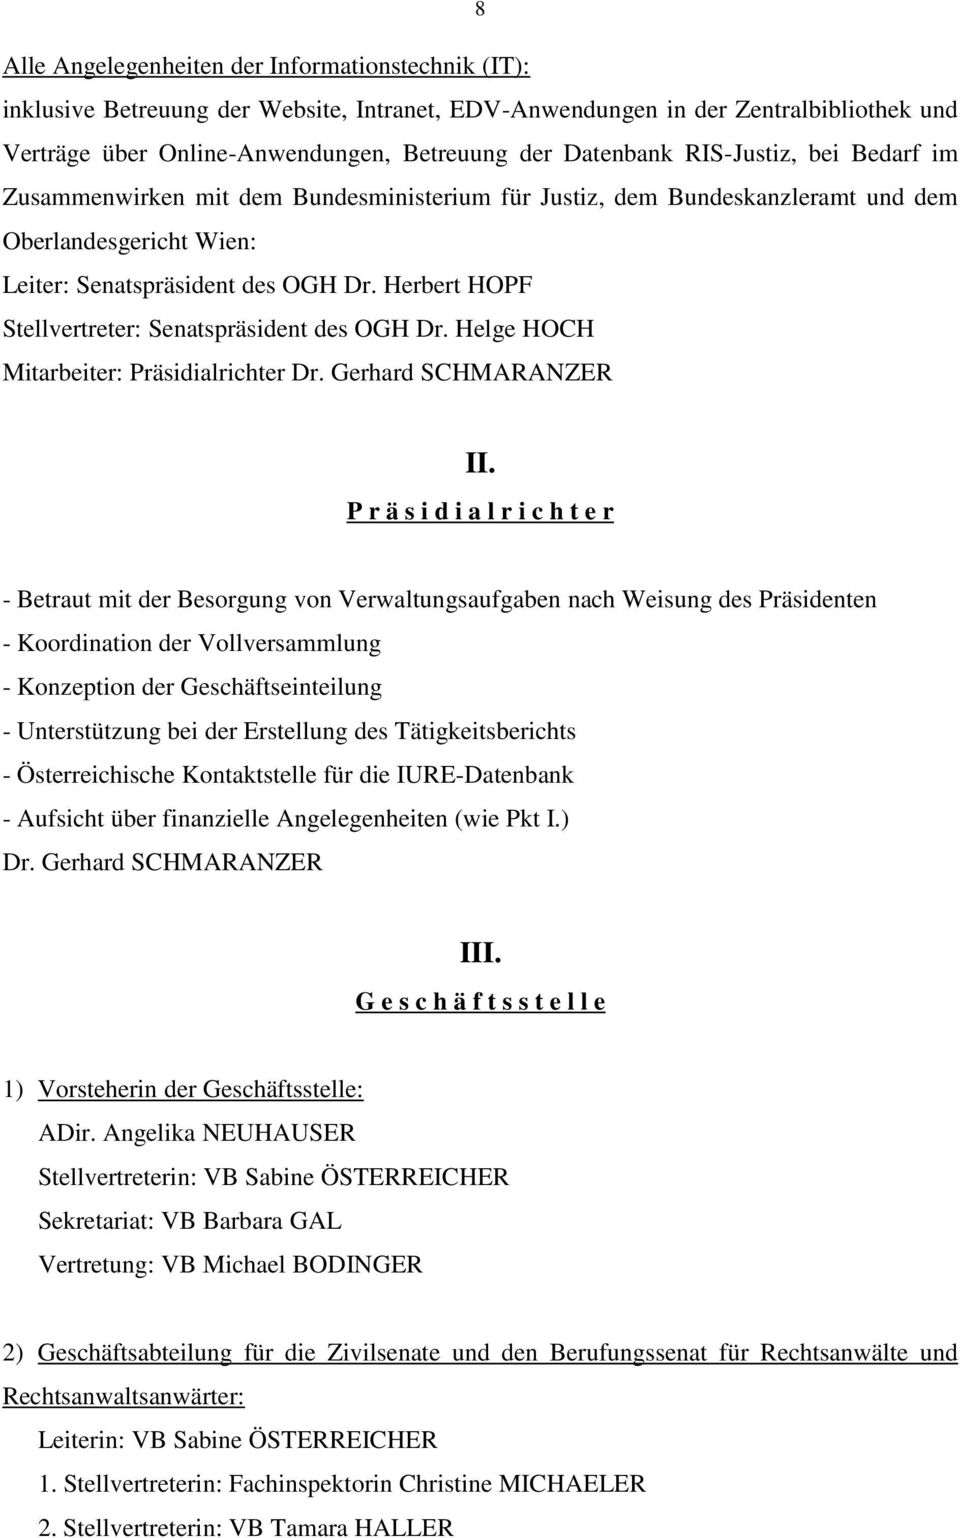 Herbert HOPF Stellvertreter: Senatspräsident des OGH Dr. Helge HOCH Mitarbeiter: Präsidialrichter Dr. Gerhard SCHMARANZER II.